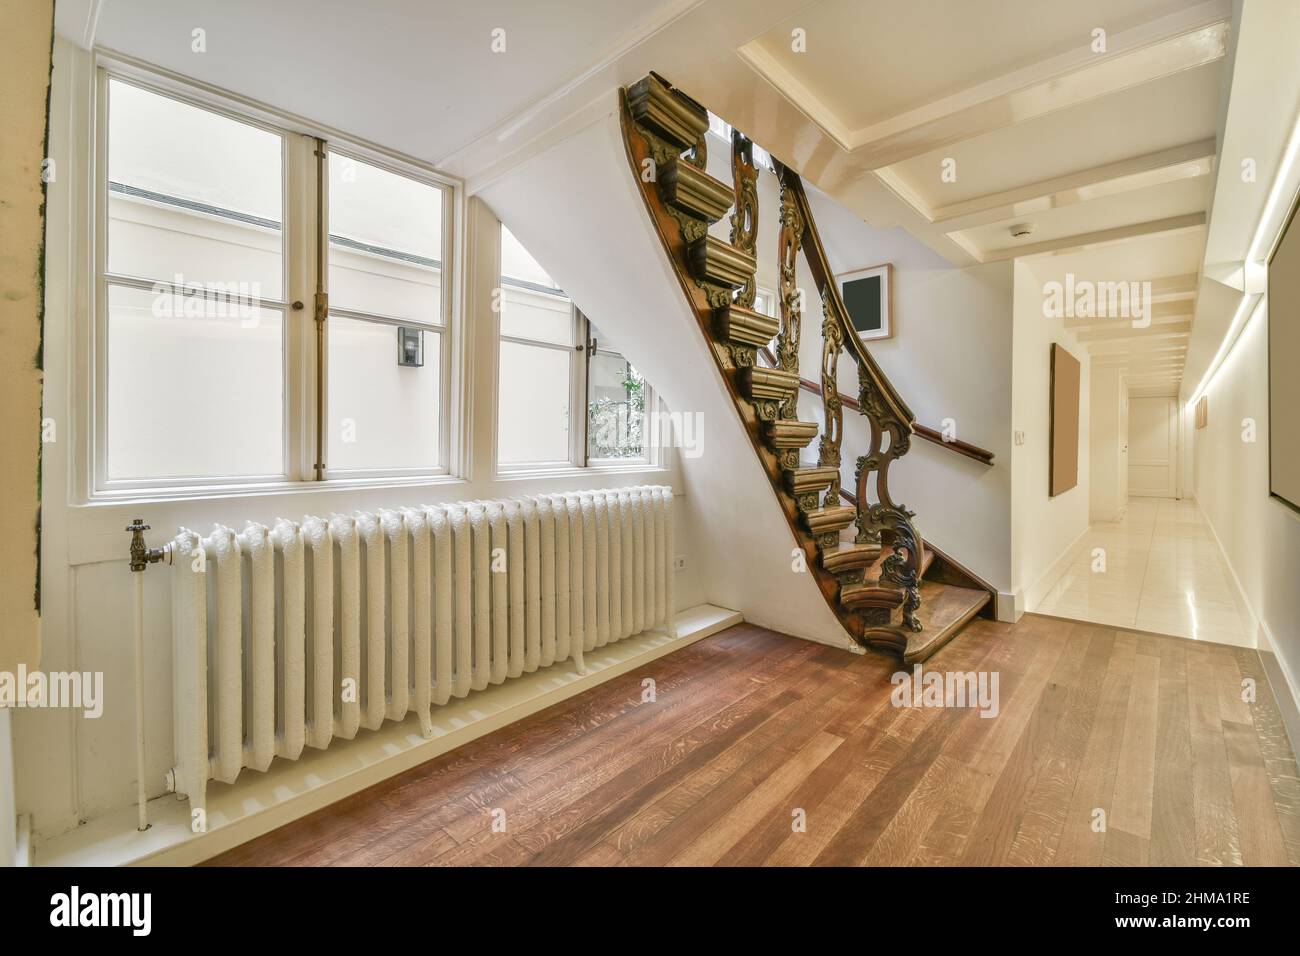 Escalier avec rambardes ornementales placé près de la fenêtre et des radiateurs dans appartement lumineux spacieux avec couloir long et cadres décoratifs à la maison Banque D'Images